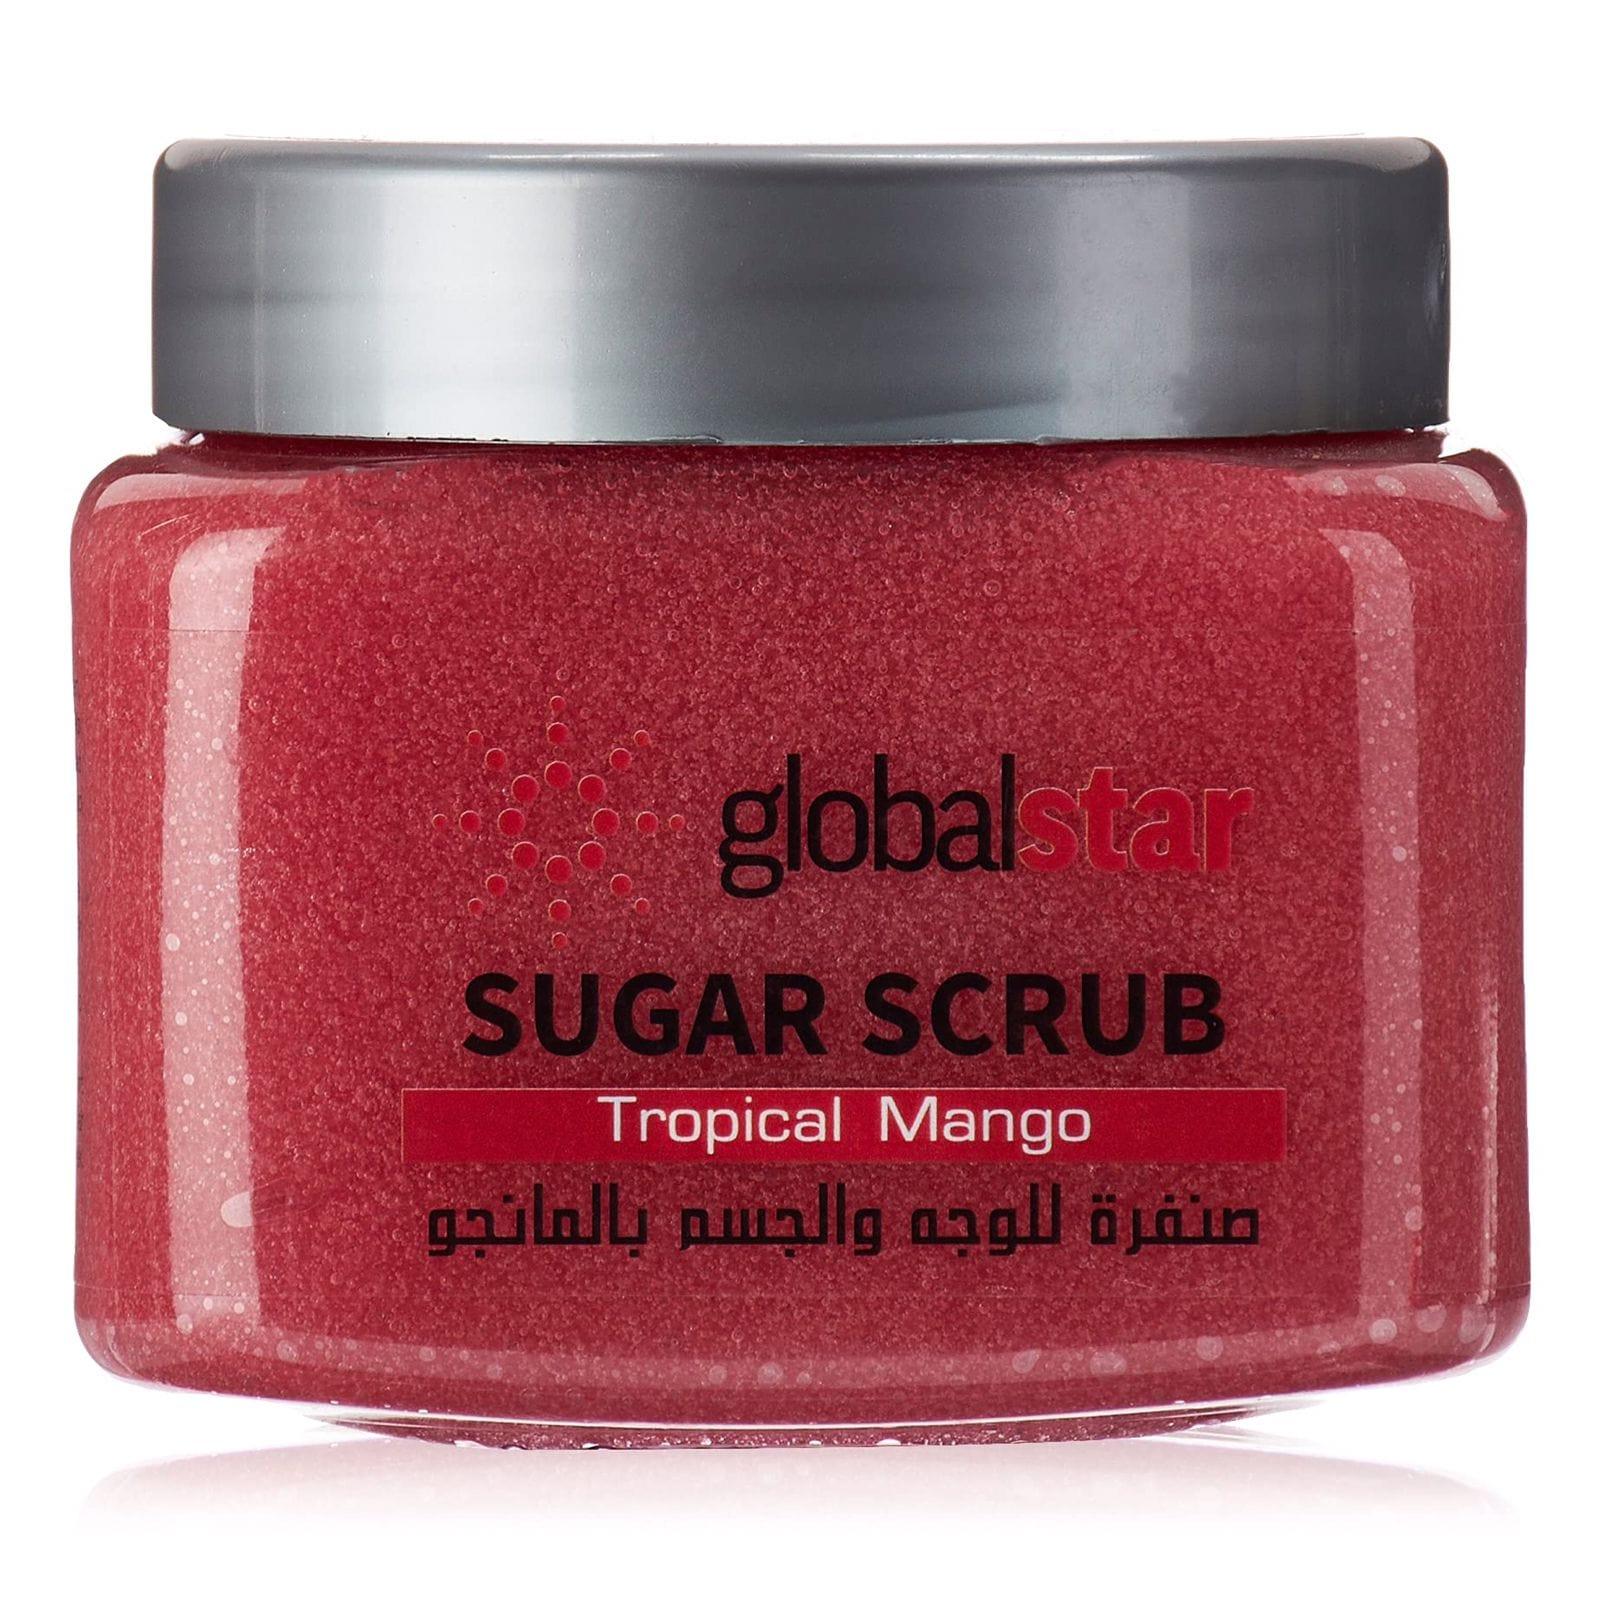 Globalstar Face & Body Sugar Scrub Tropical Mango 600g